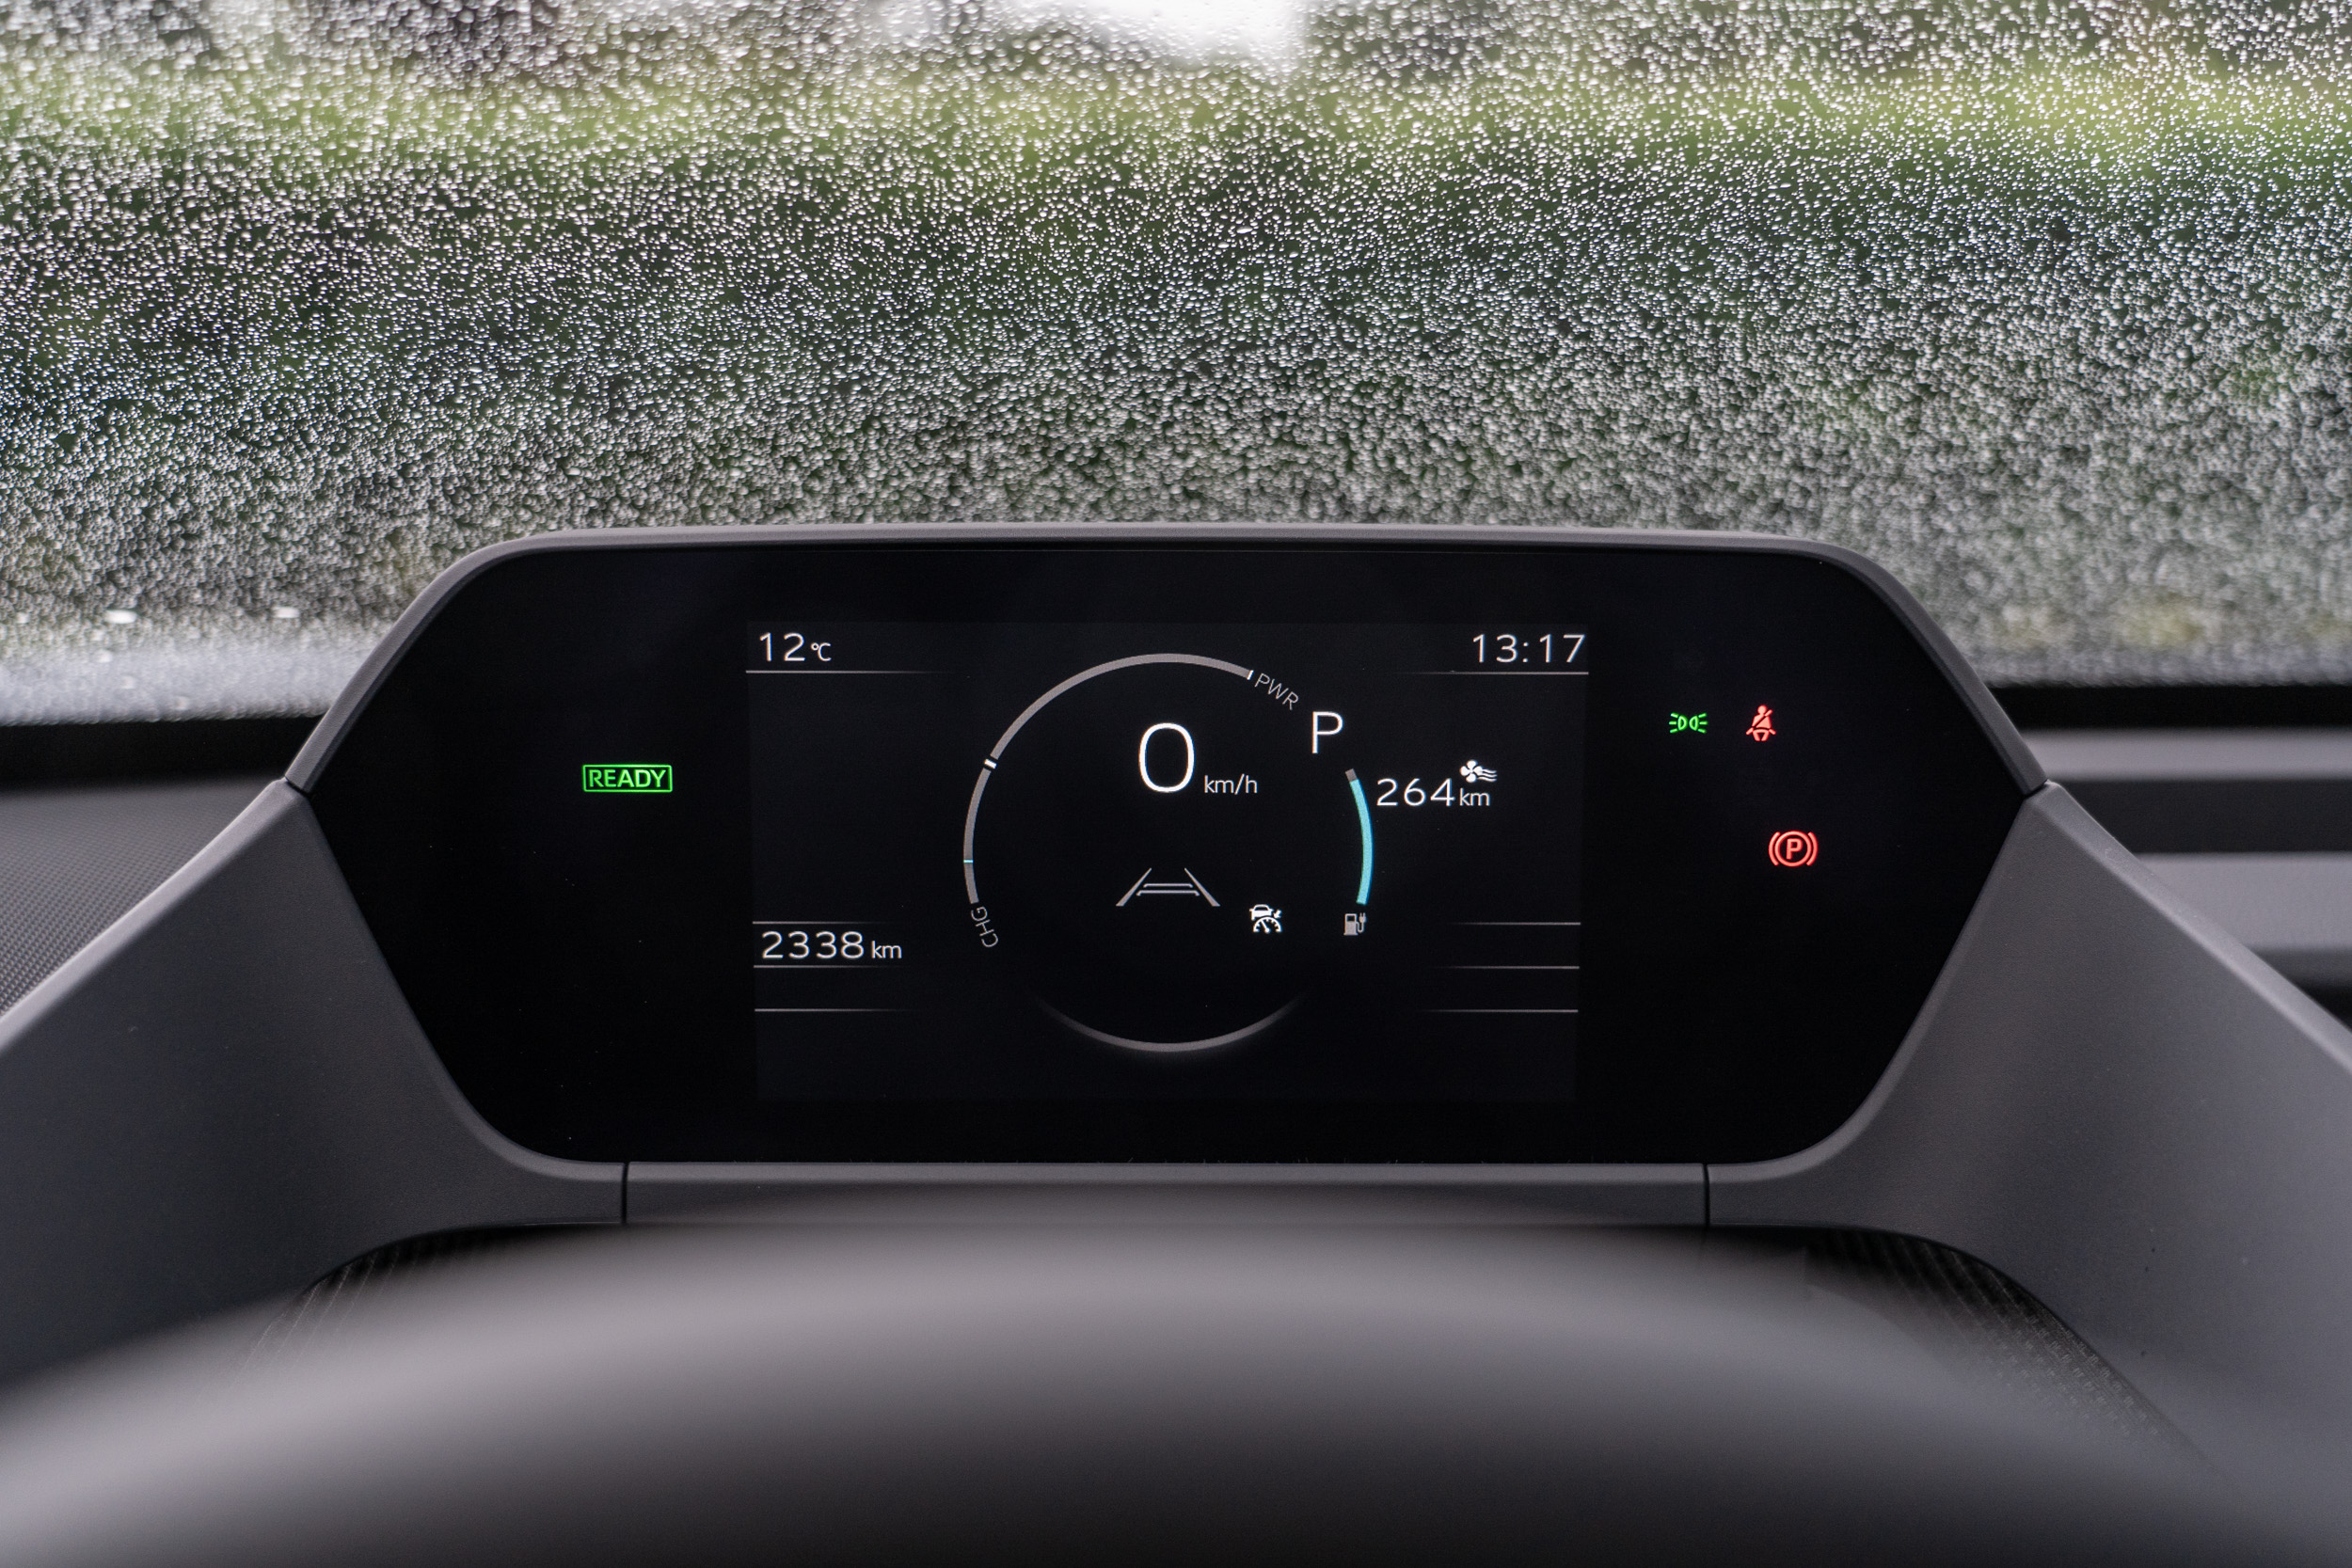 數位儀錶可顯示最基本的行車資訊、包括剩餘行駛里程預測、踏板煞車力道等。